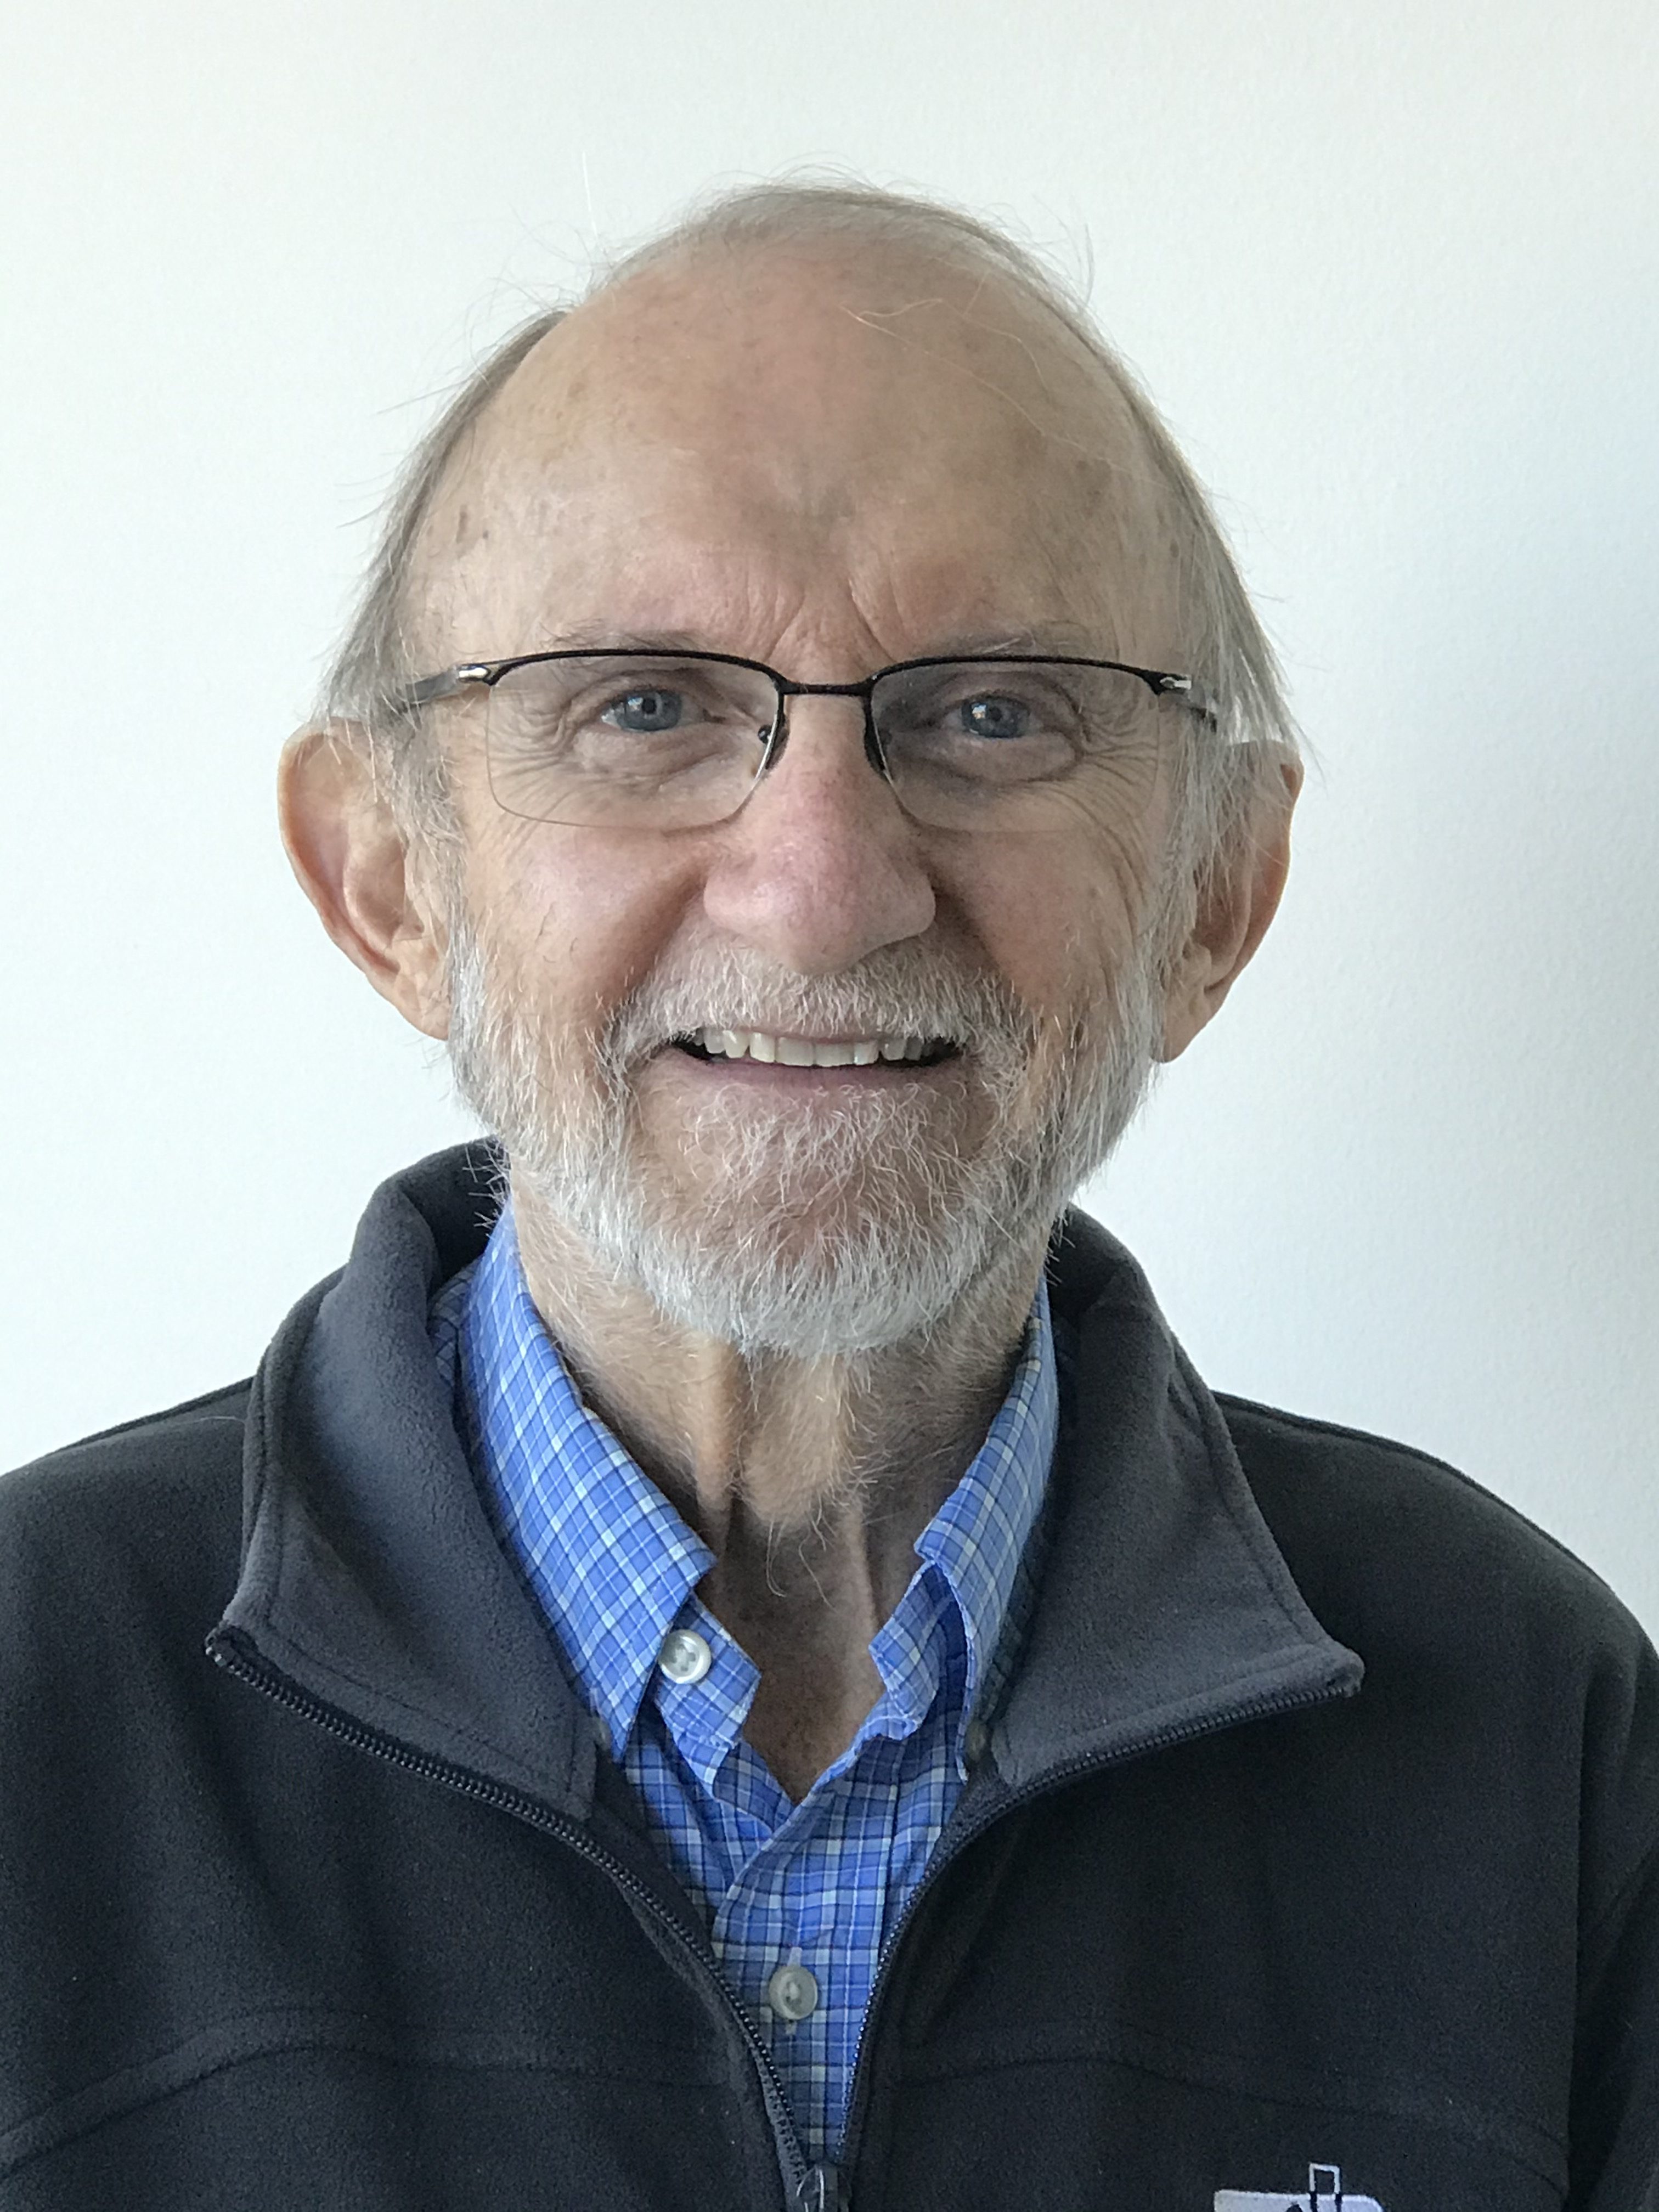 Portrait de Jim Dadson. Jim, un homme âgé avec une barbe blanche et des lunettes, sourit à la caméra.